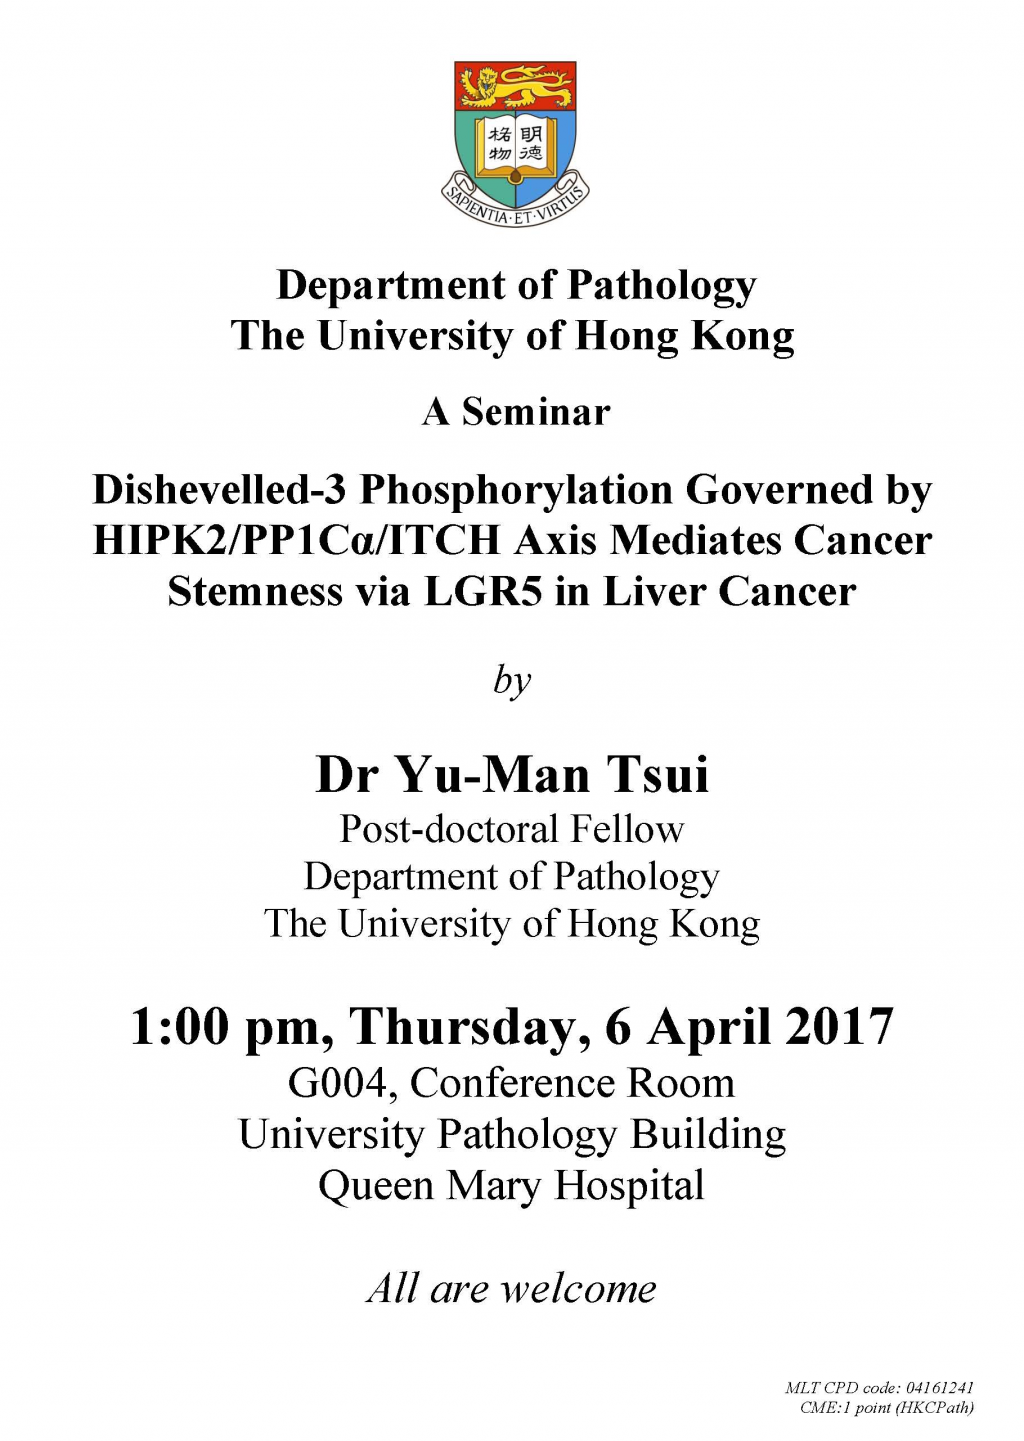 Seminar by Dr Yu-Man Tsui on 6 April 2017 (1pm)